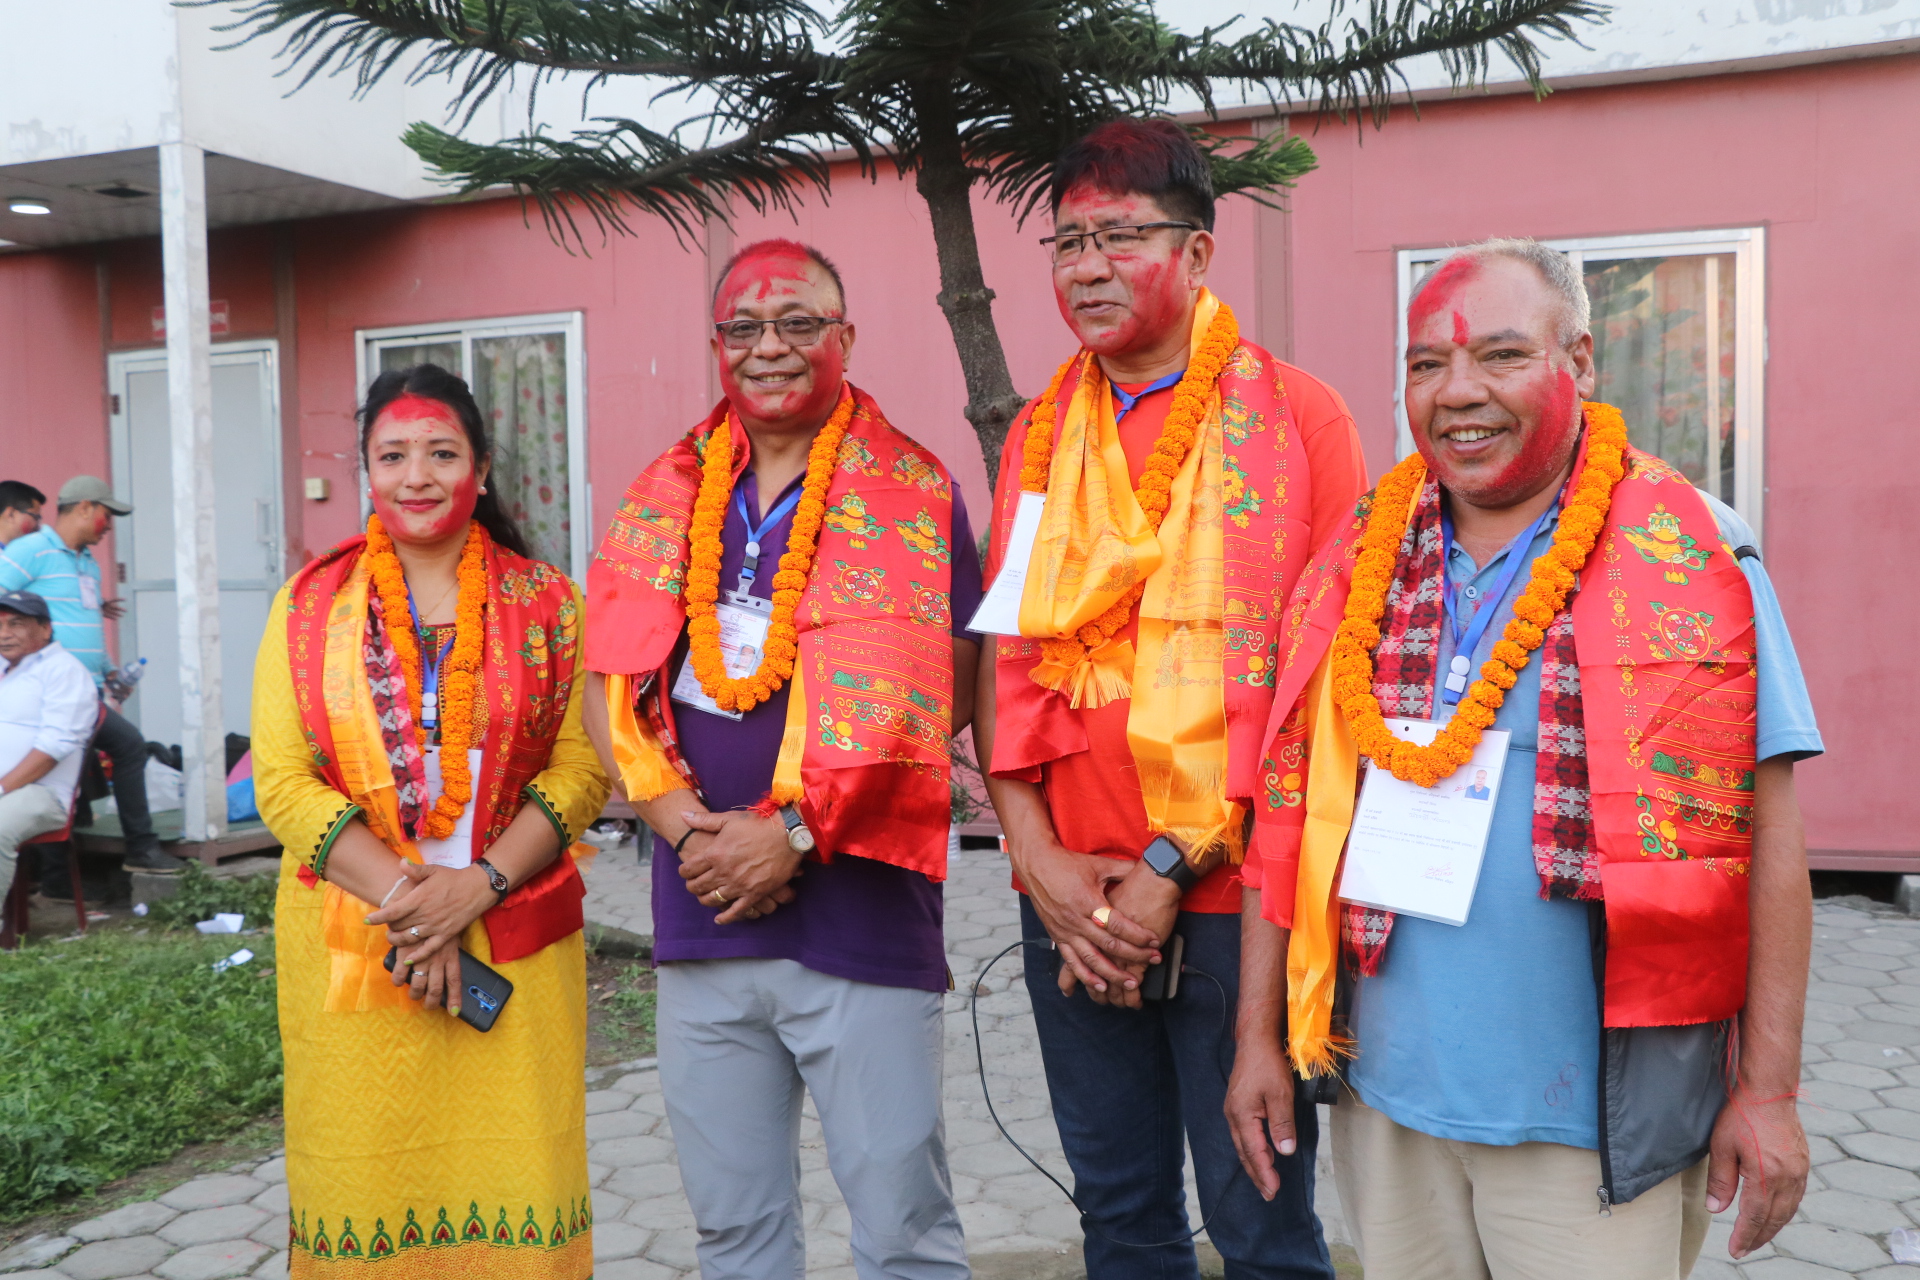 काठमाडौं-२७ मा कांग्रेस विजयी, बालेनले पाए ५५५ मत